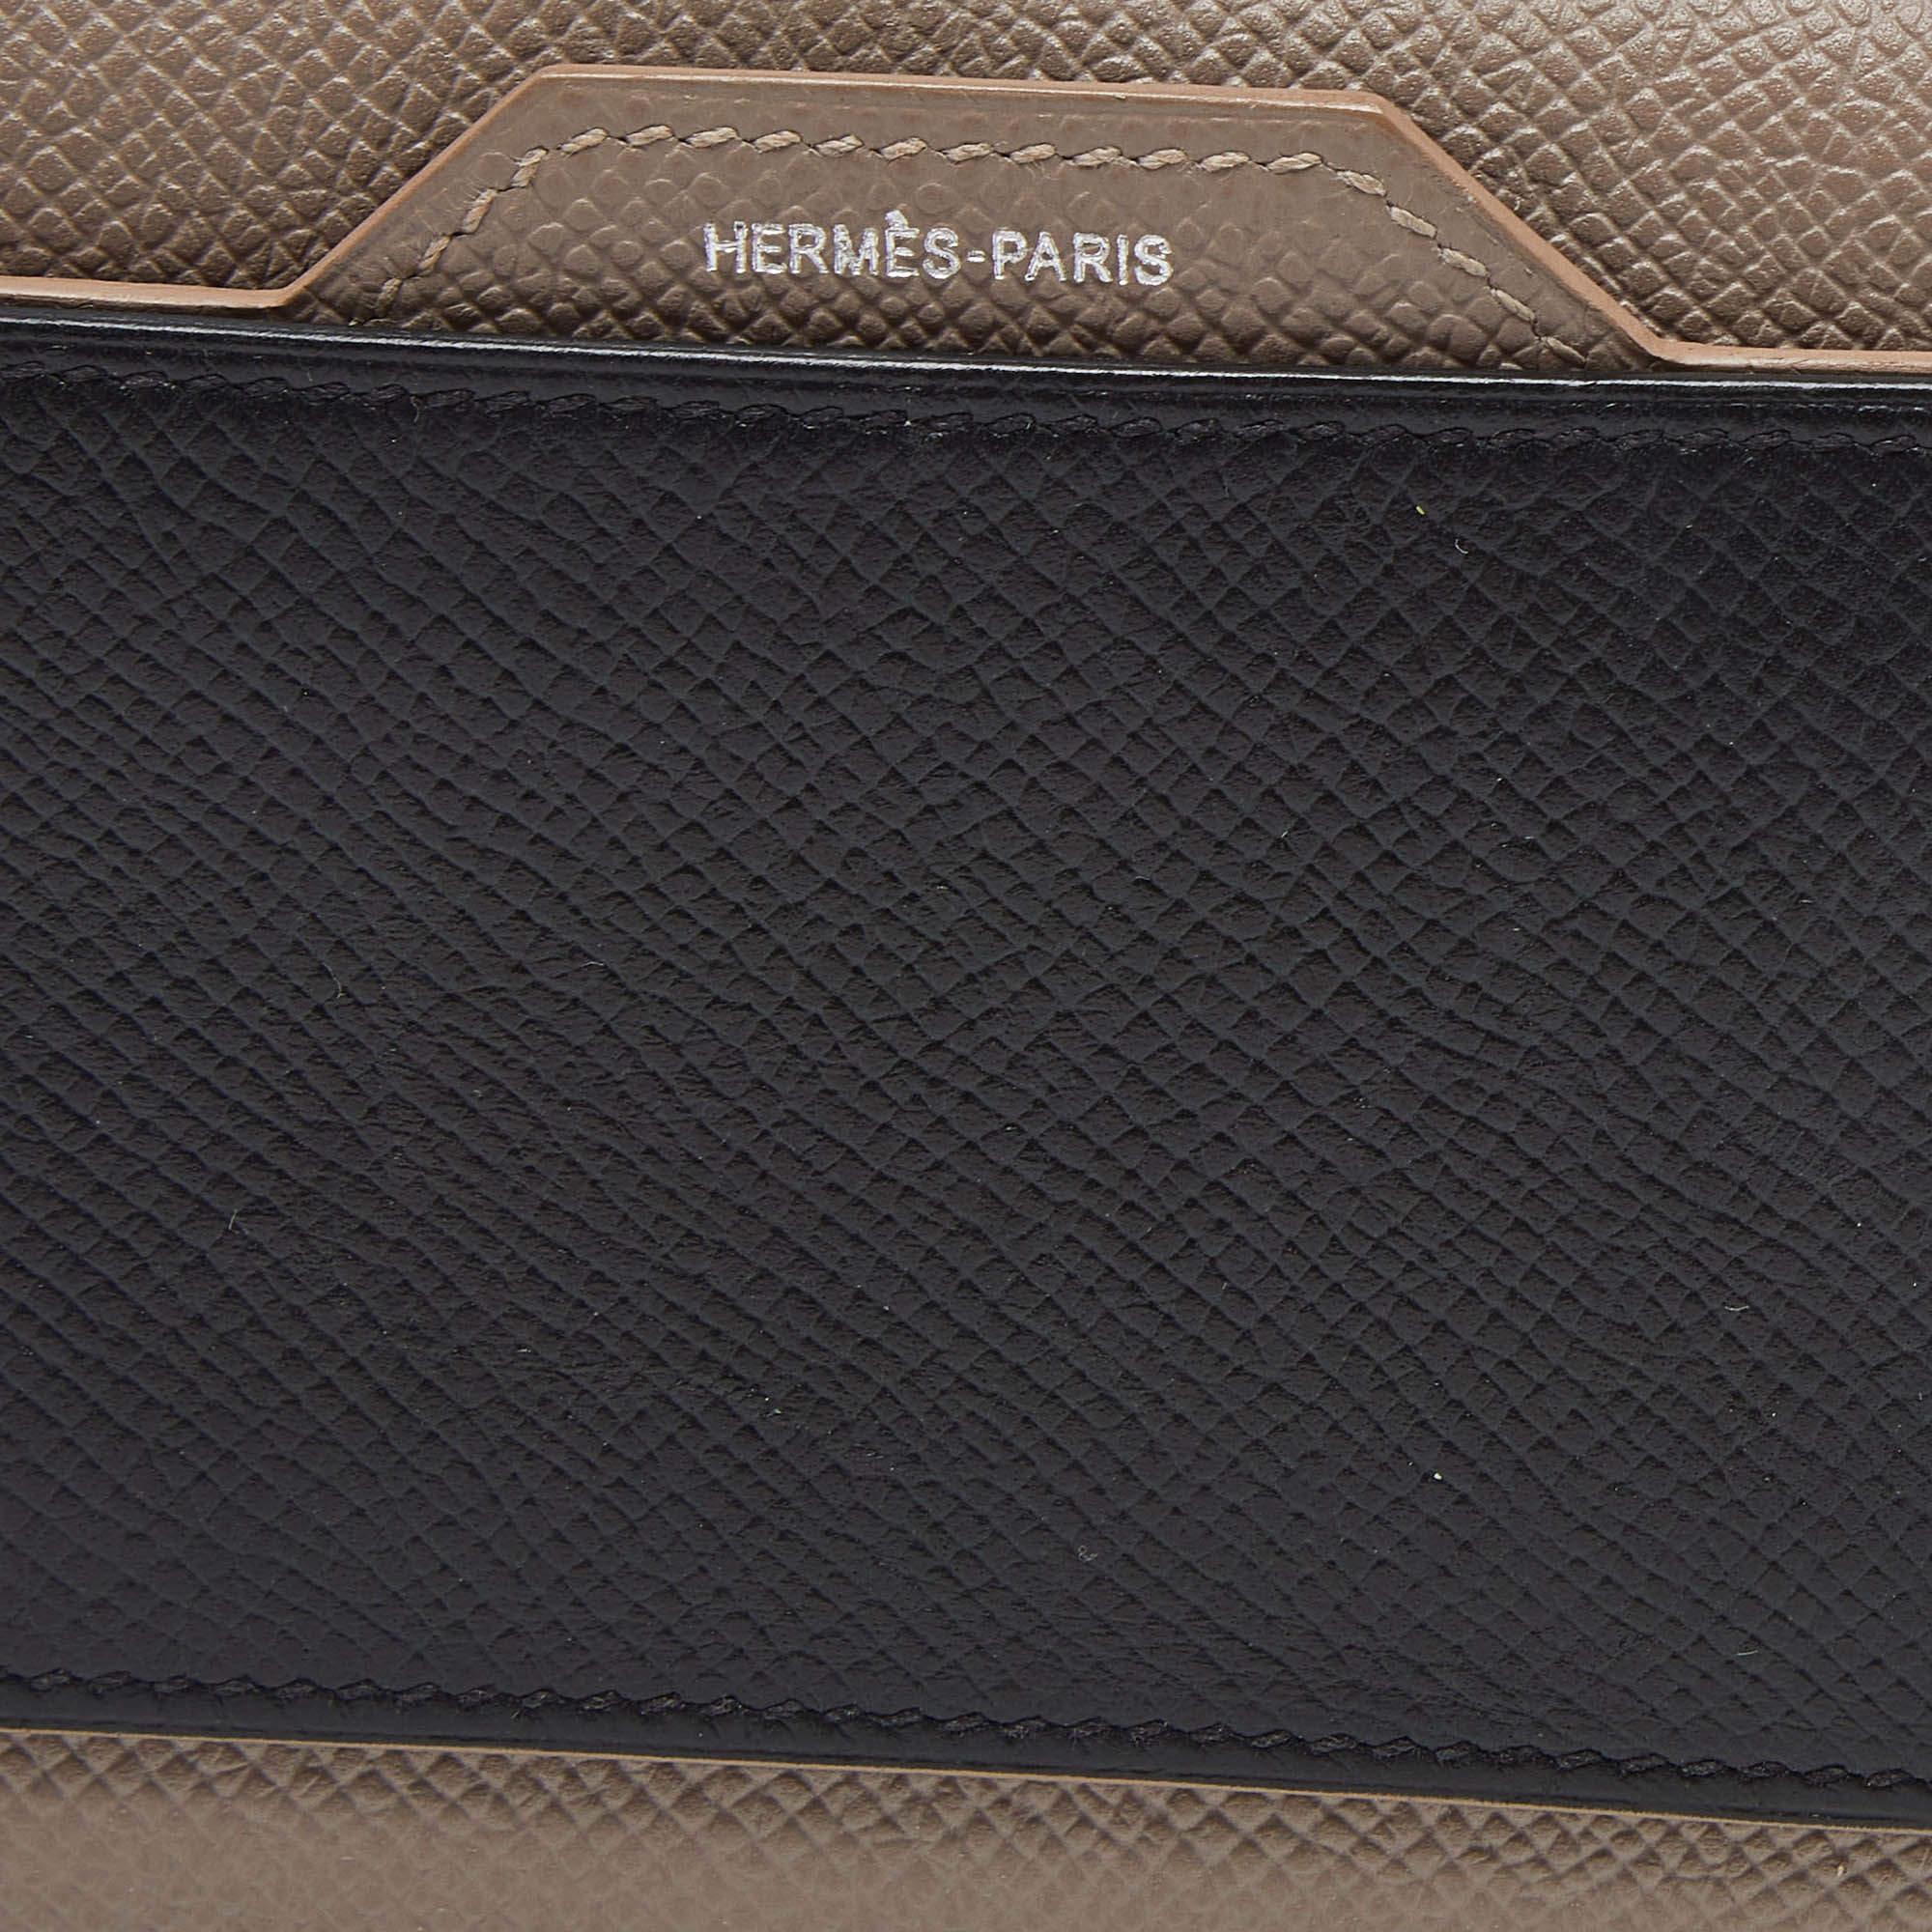 Hermès Etain/Black Epsom Leather Passant Compact Wallet For Sale 4